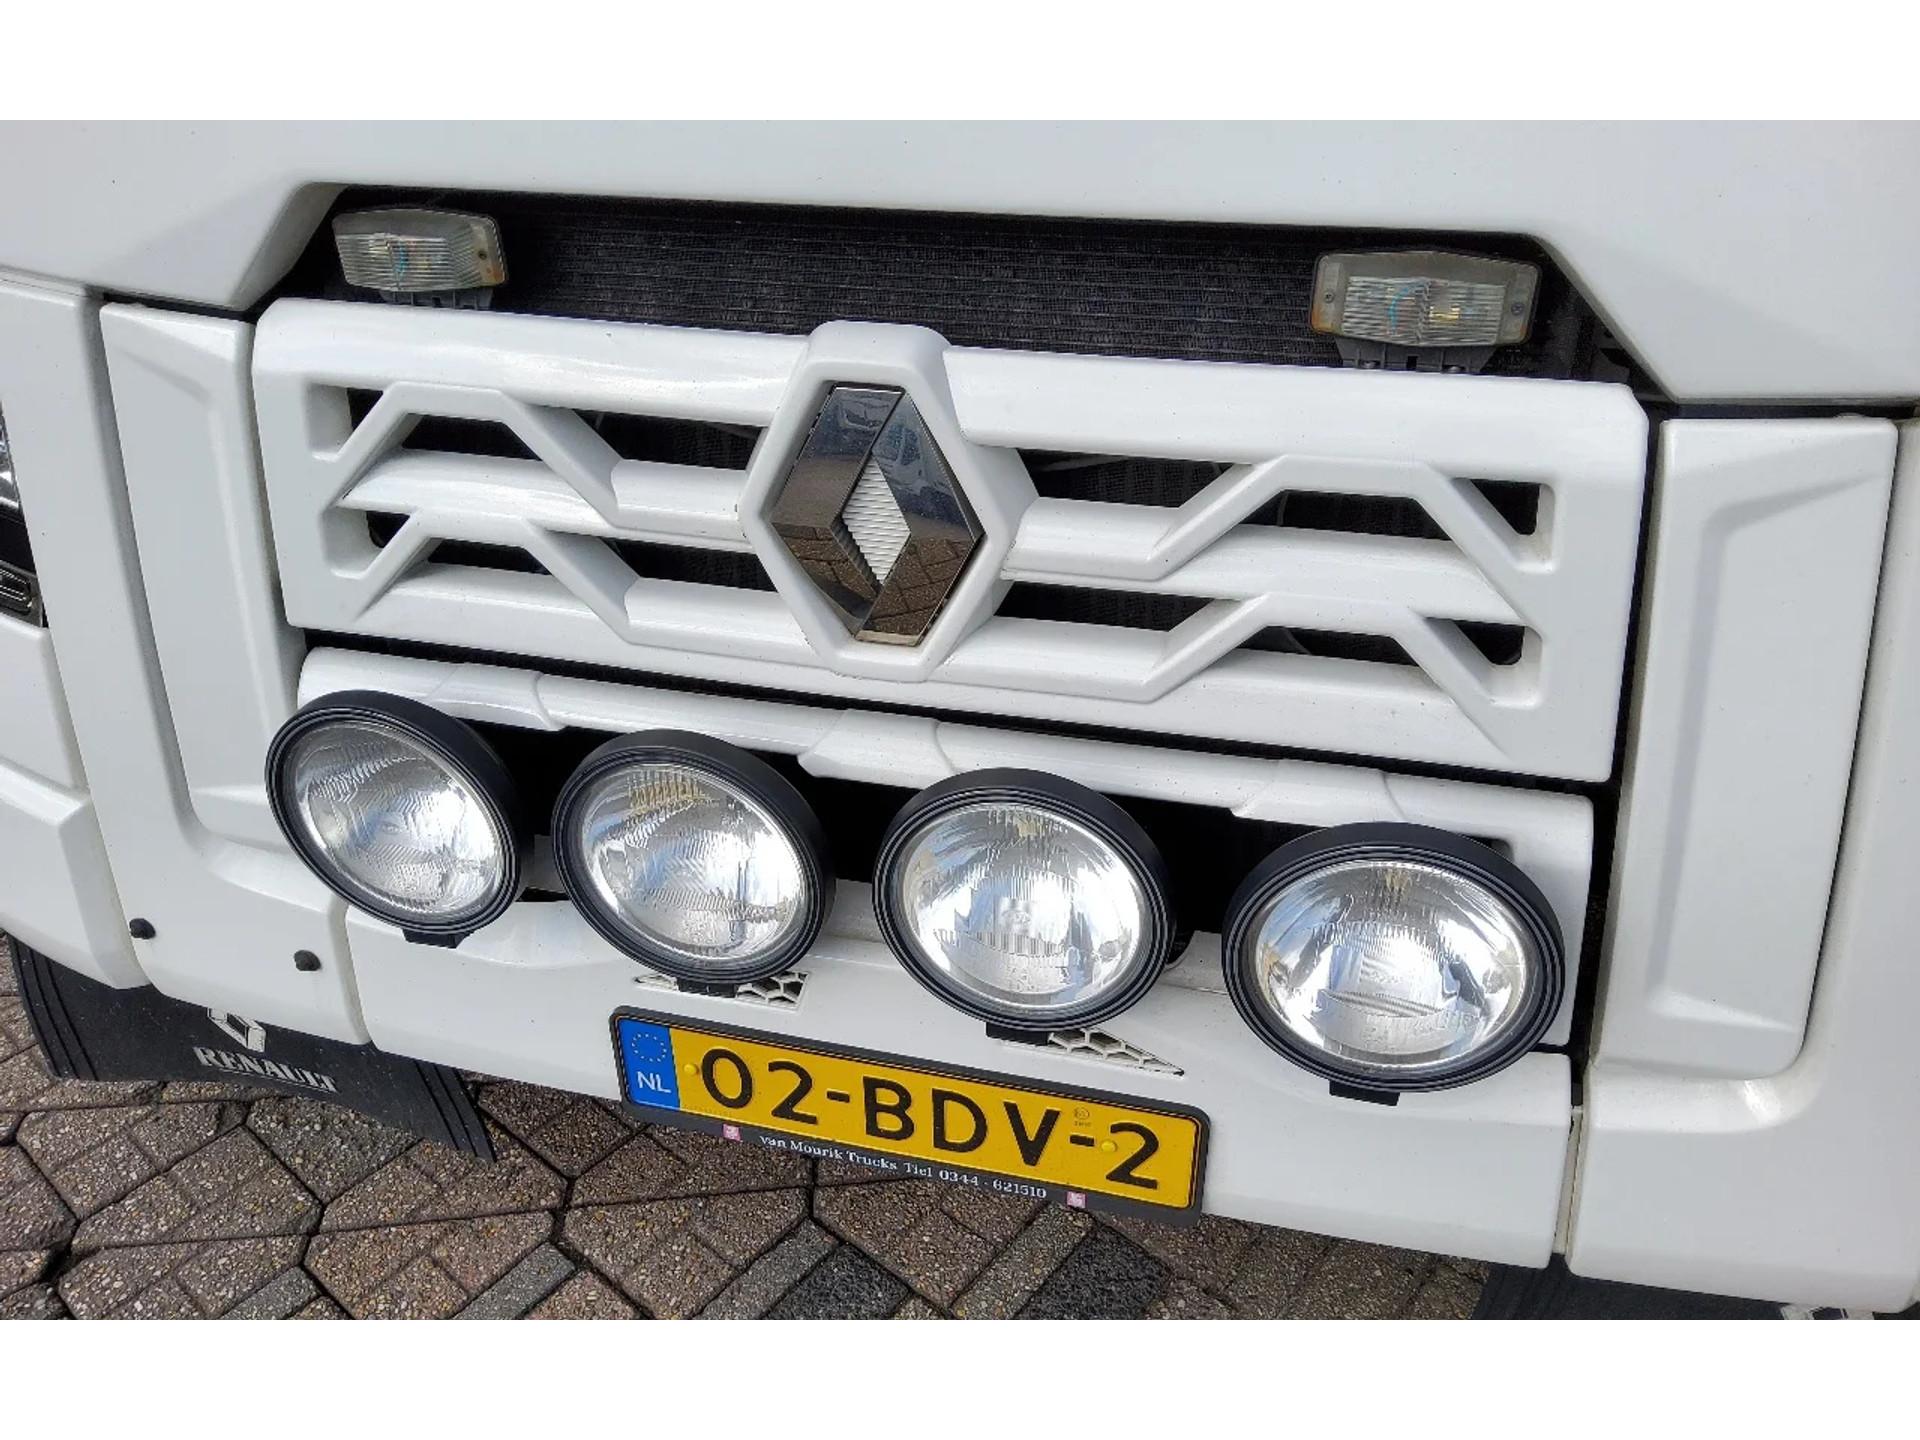 Foto 5 van Renault T460 4x2 SLEEPER - EURO 6 - 02-BDV-2